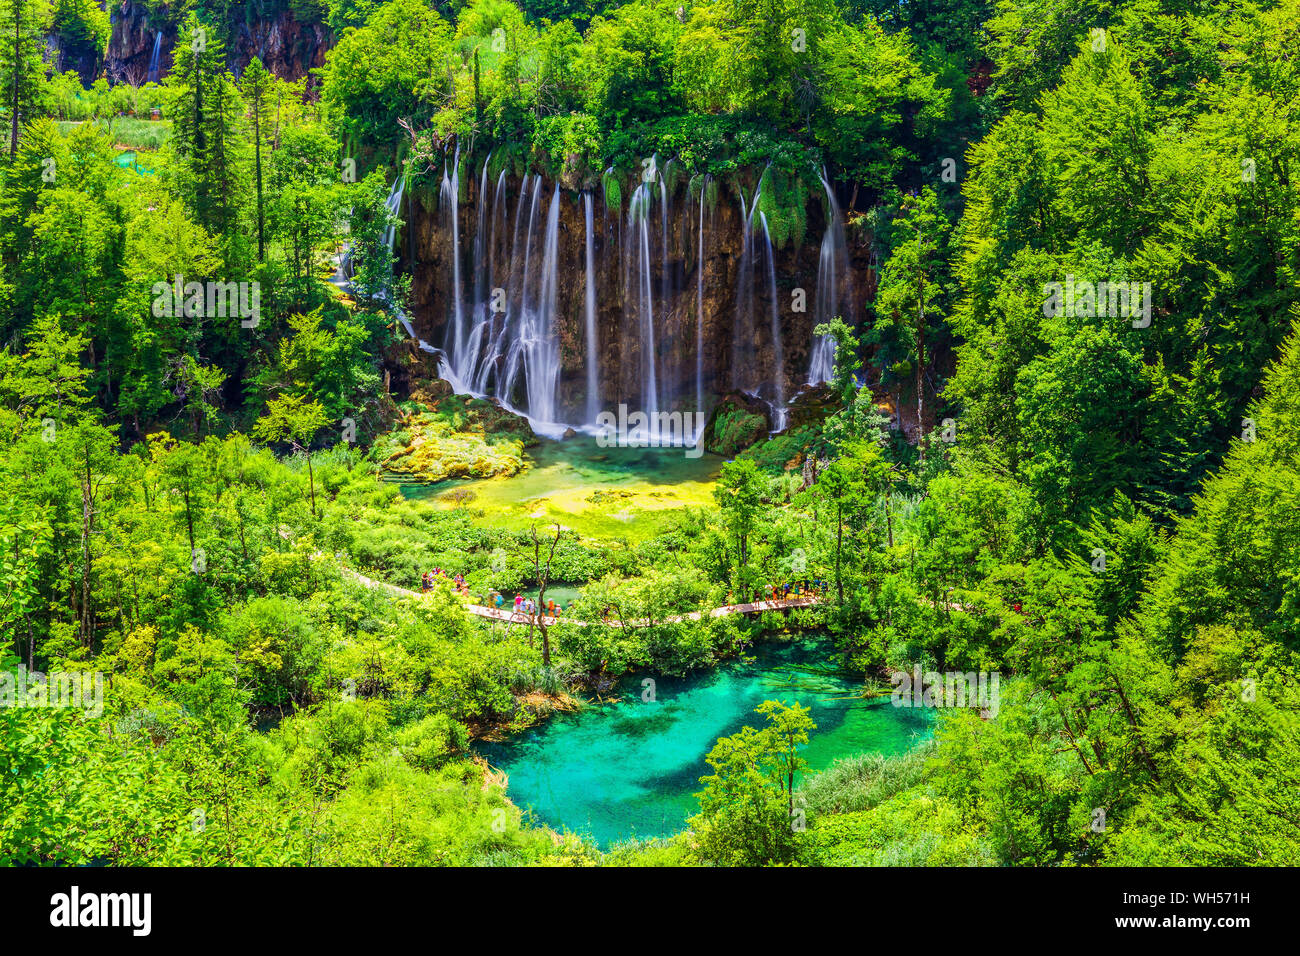 Los lagos de Plitvice (Croacia). Las cascadas del parque nacional de los Lagos de Plitvice. Foto de stock